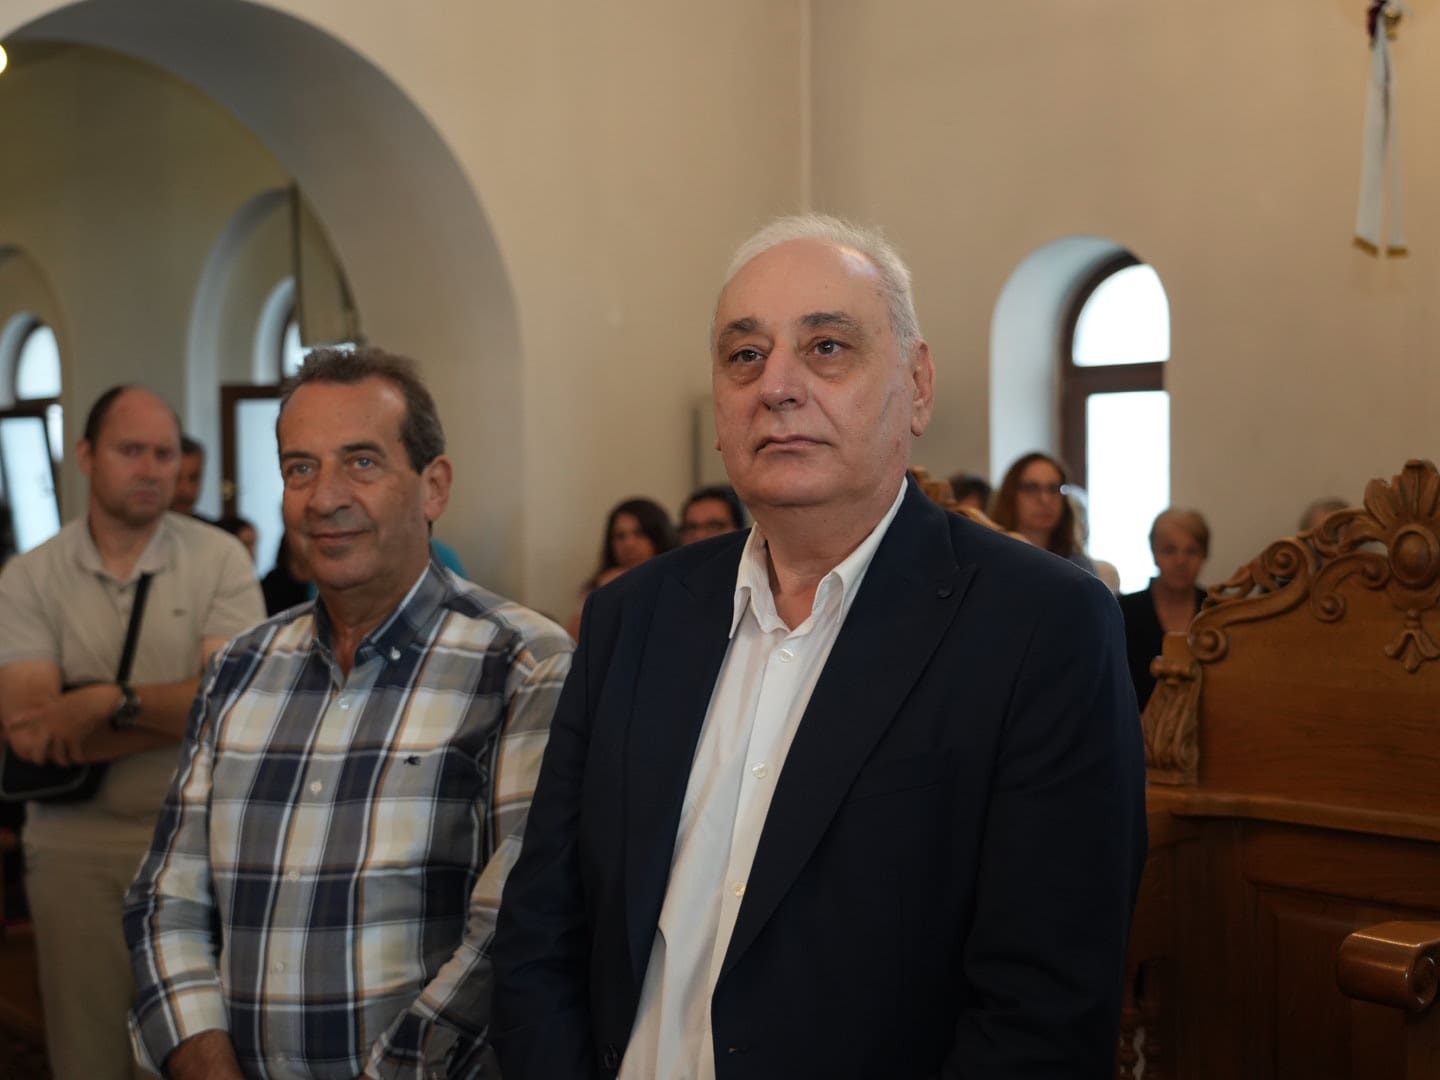 Μητροπολιτικός Ναός του Αγίου Ανδρέα Αρχιεπισκόπου Κρήτης